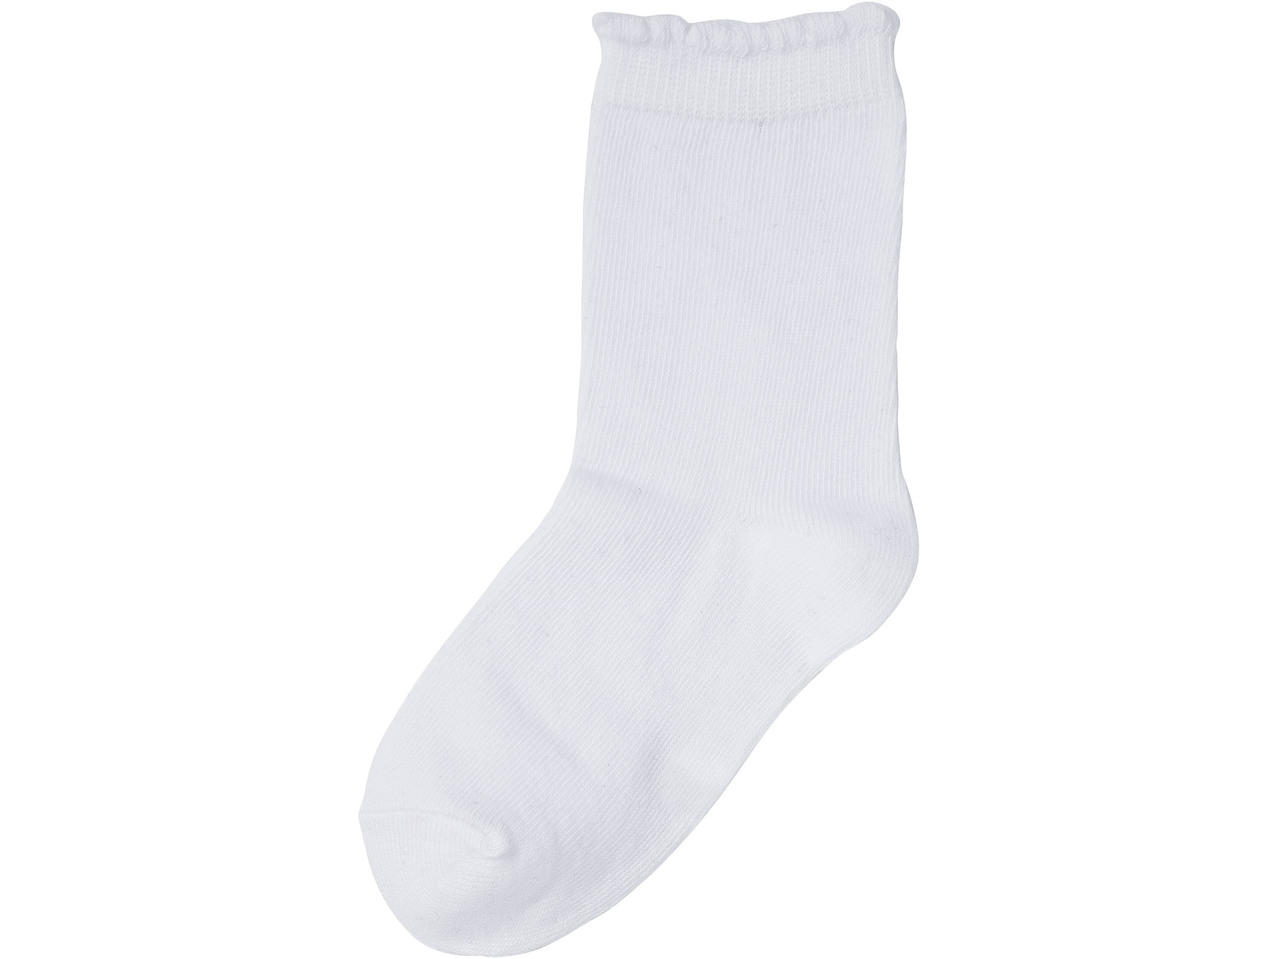 Girls' Socks, 7 pairs